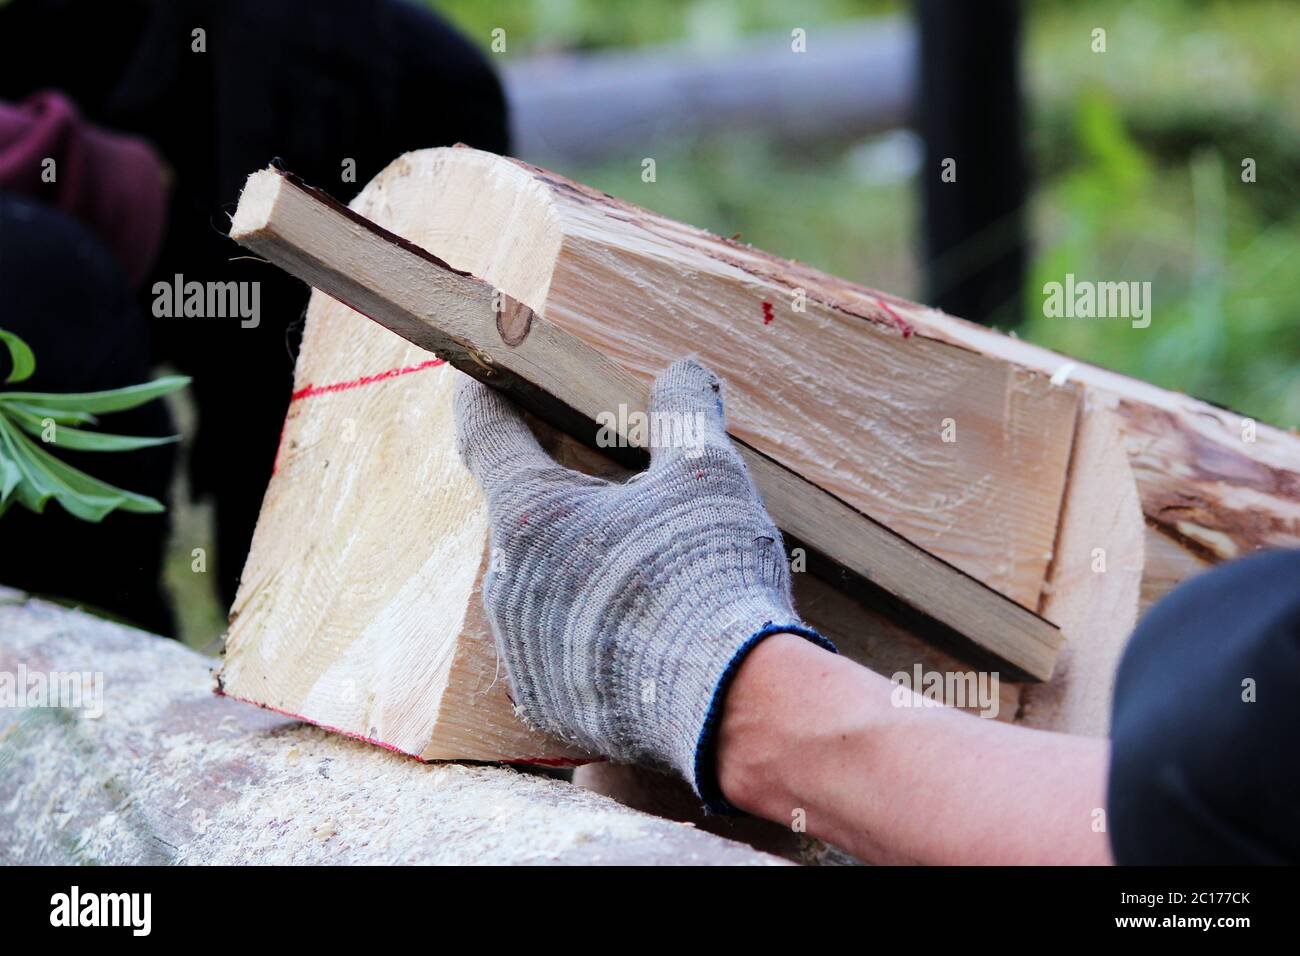 Spina di legno immagini e fotografie stock ad alta risoluzione - Alamy